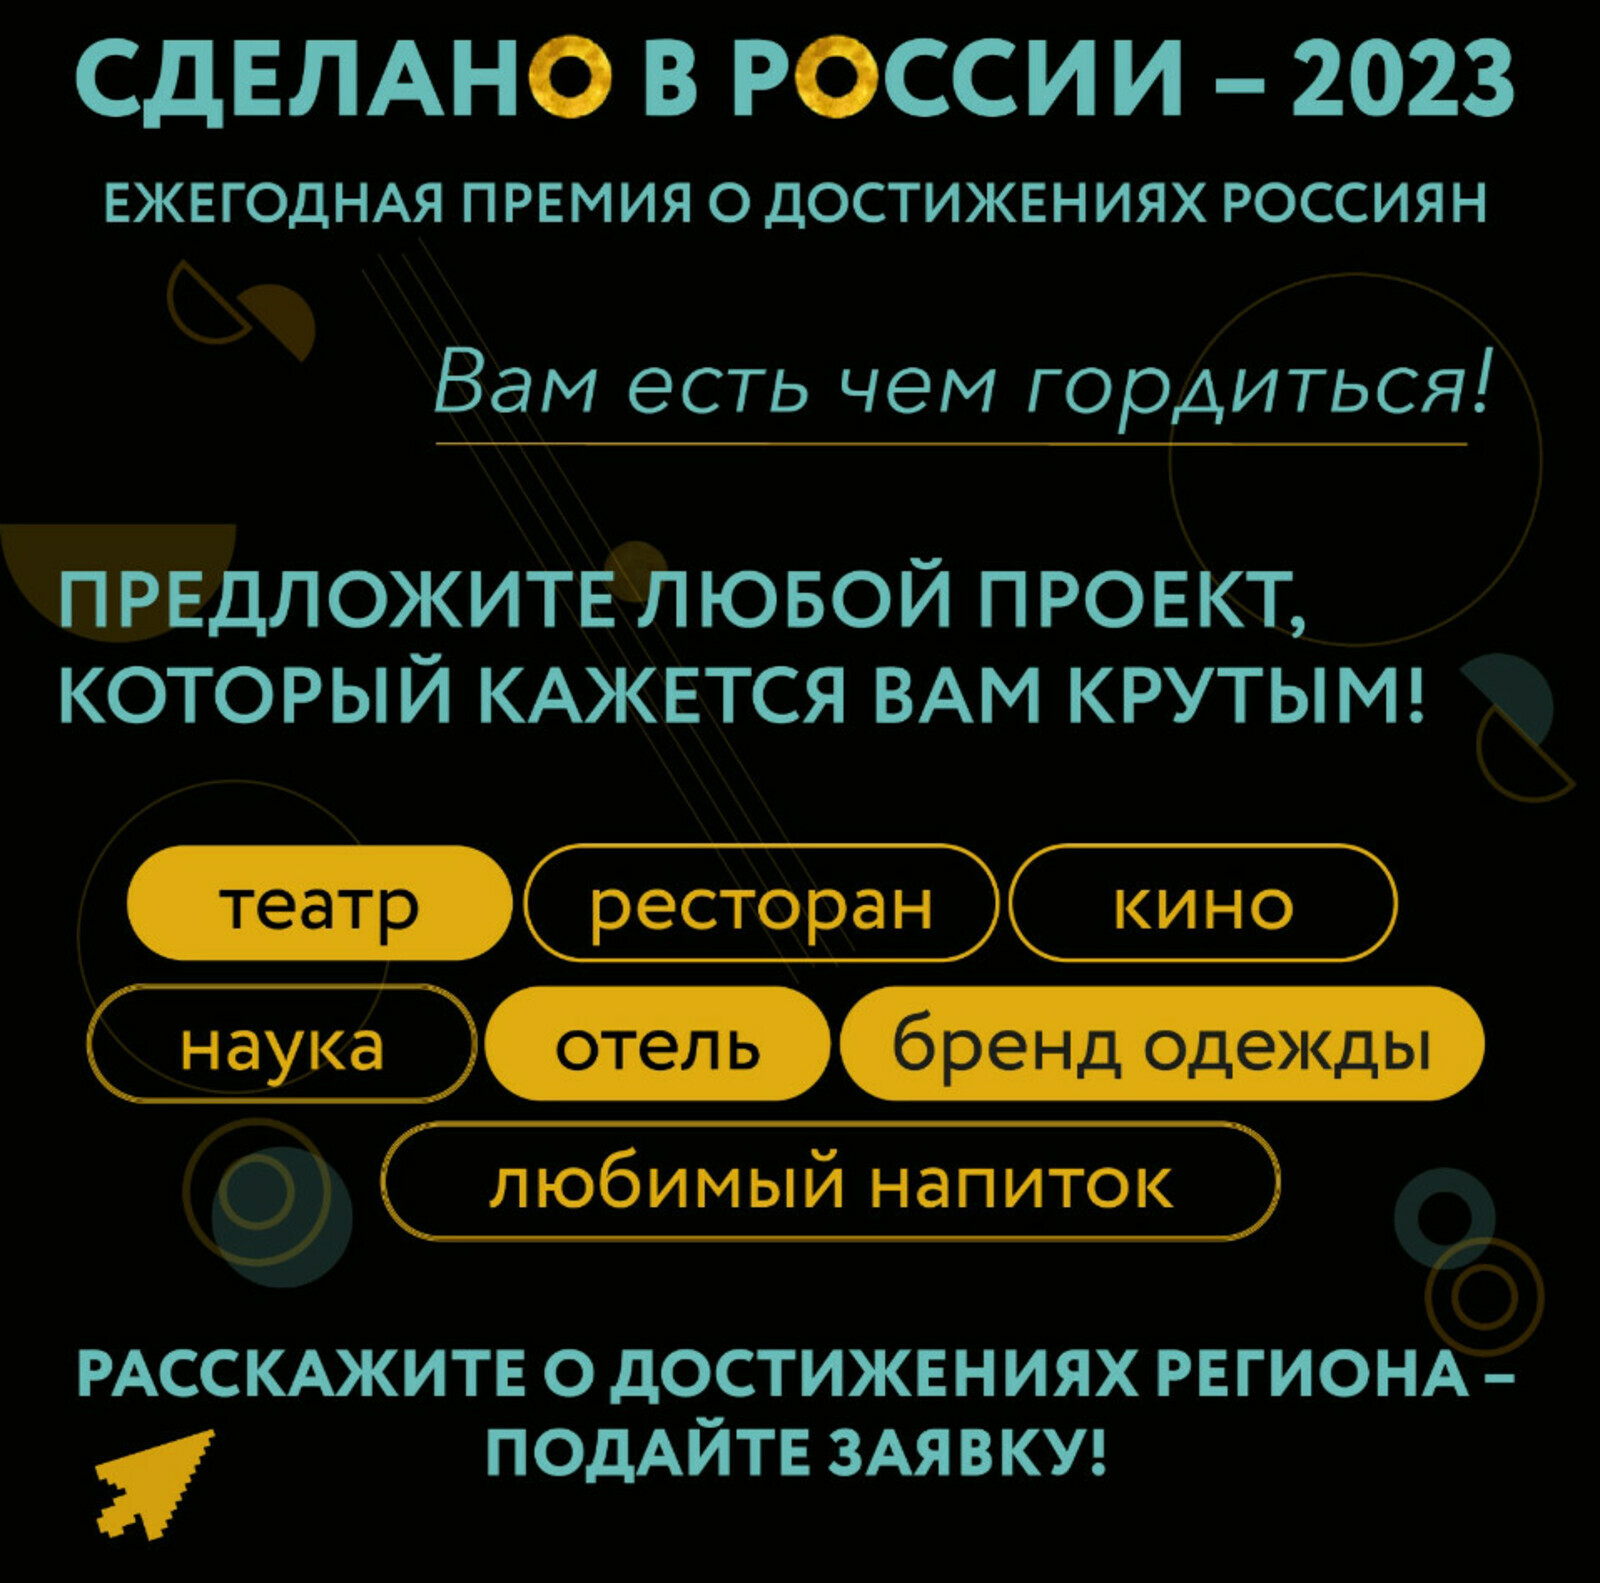 Жители Башкортостана могут принять участие в премии «Сделано в России – 2023»